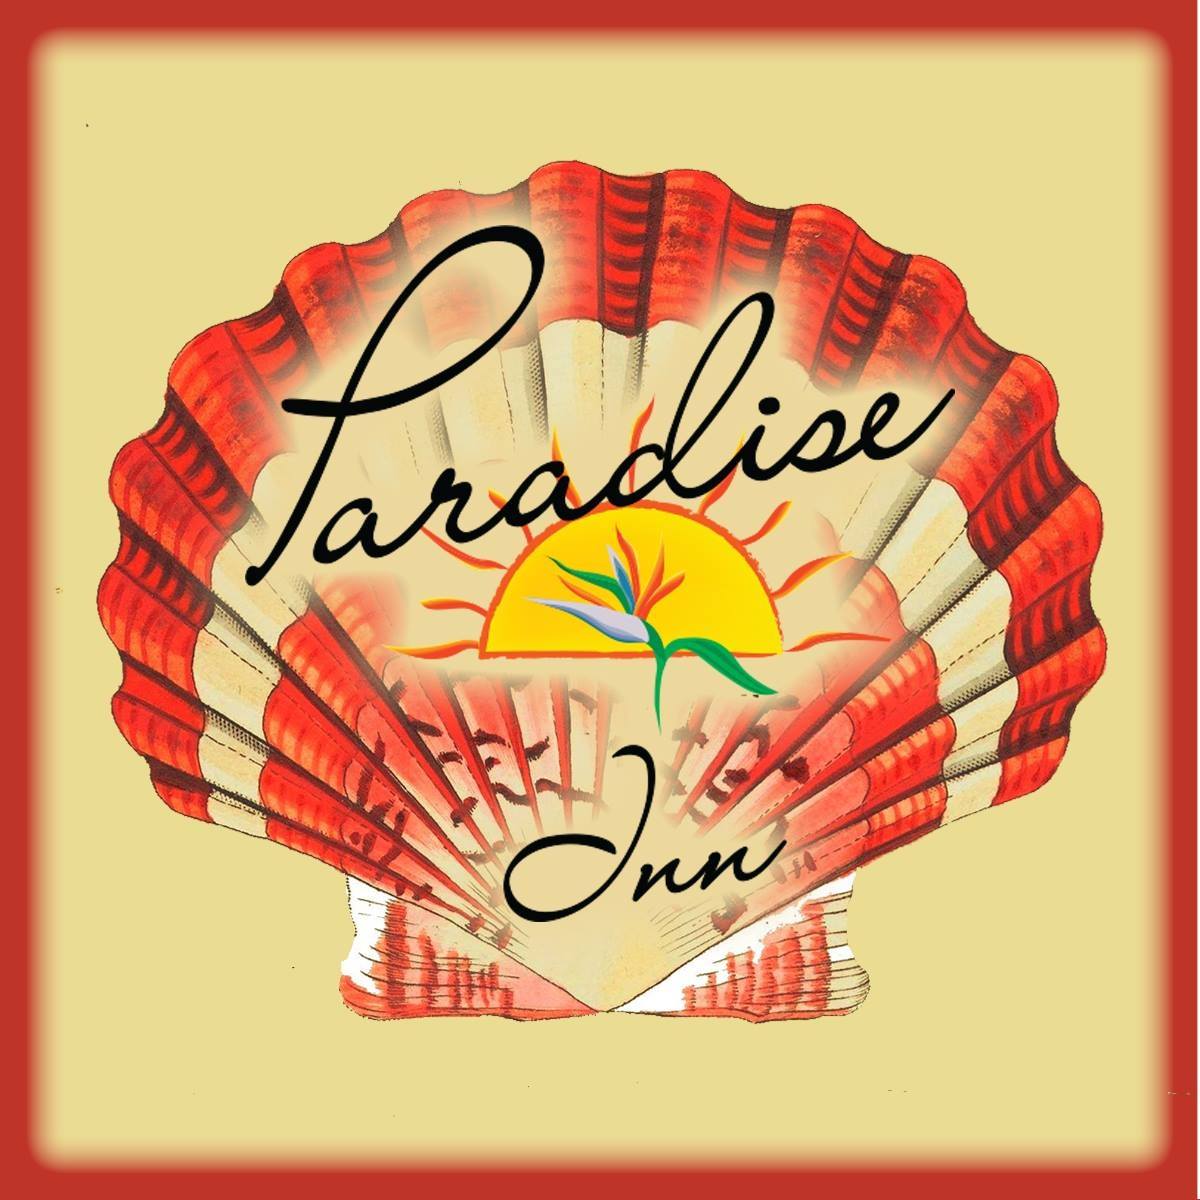 Paradise inn logo